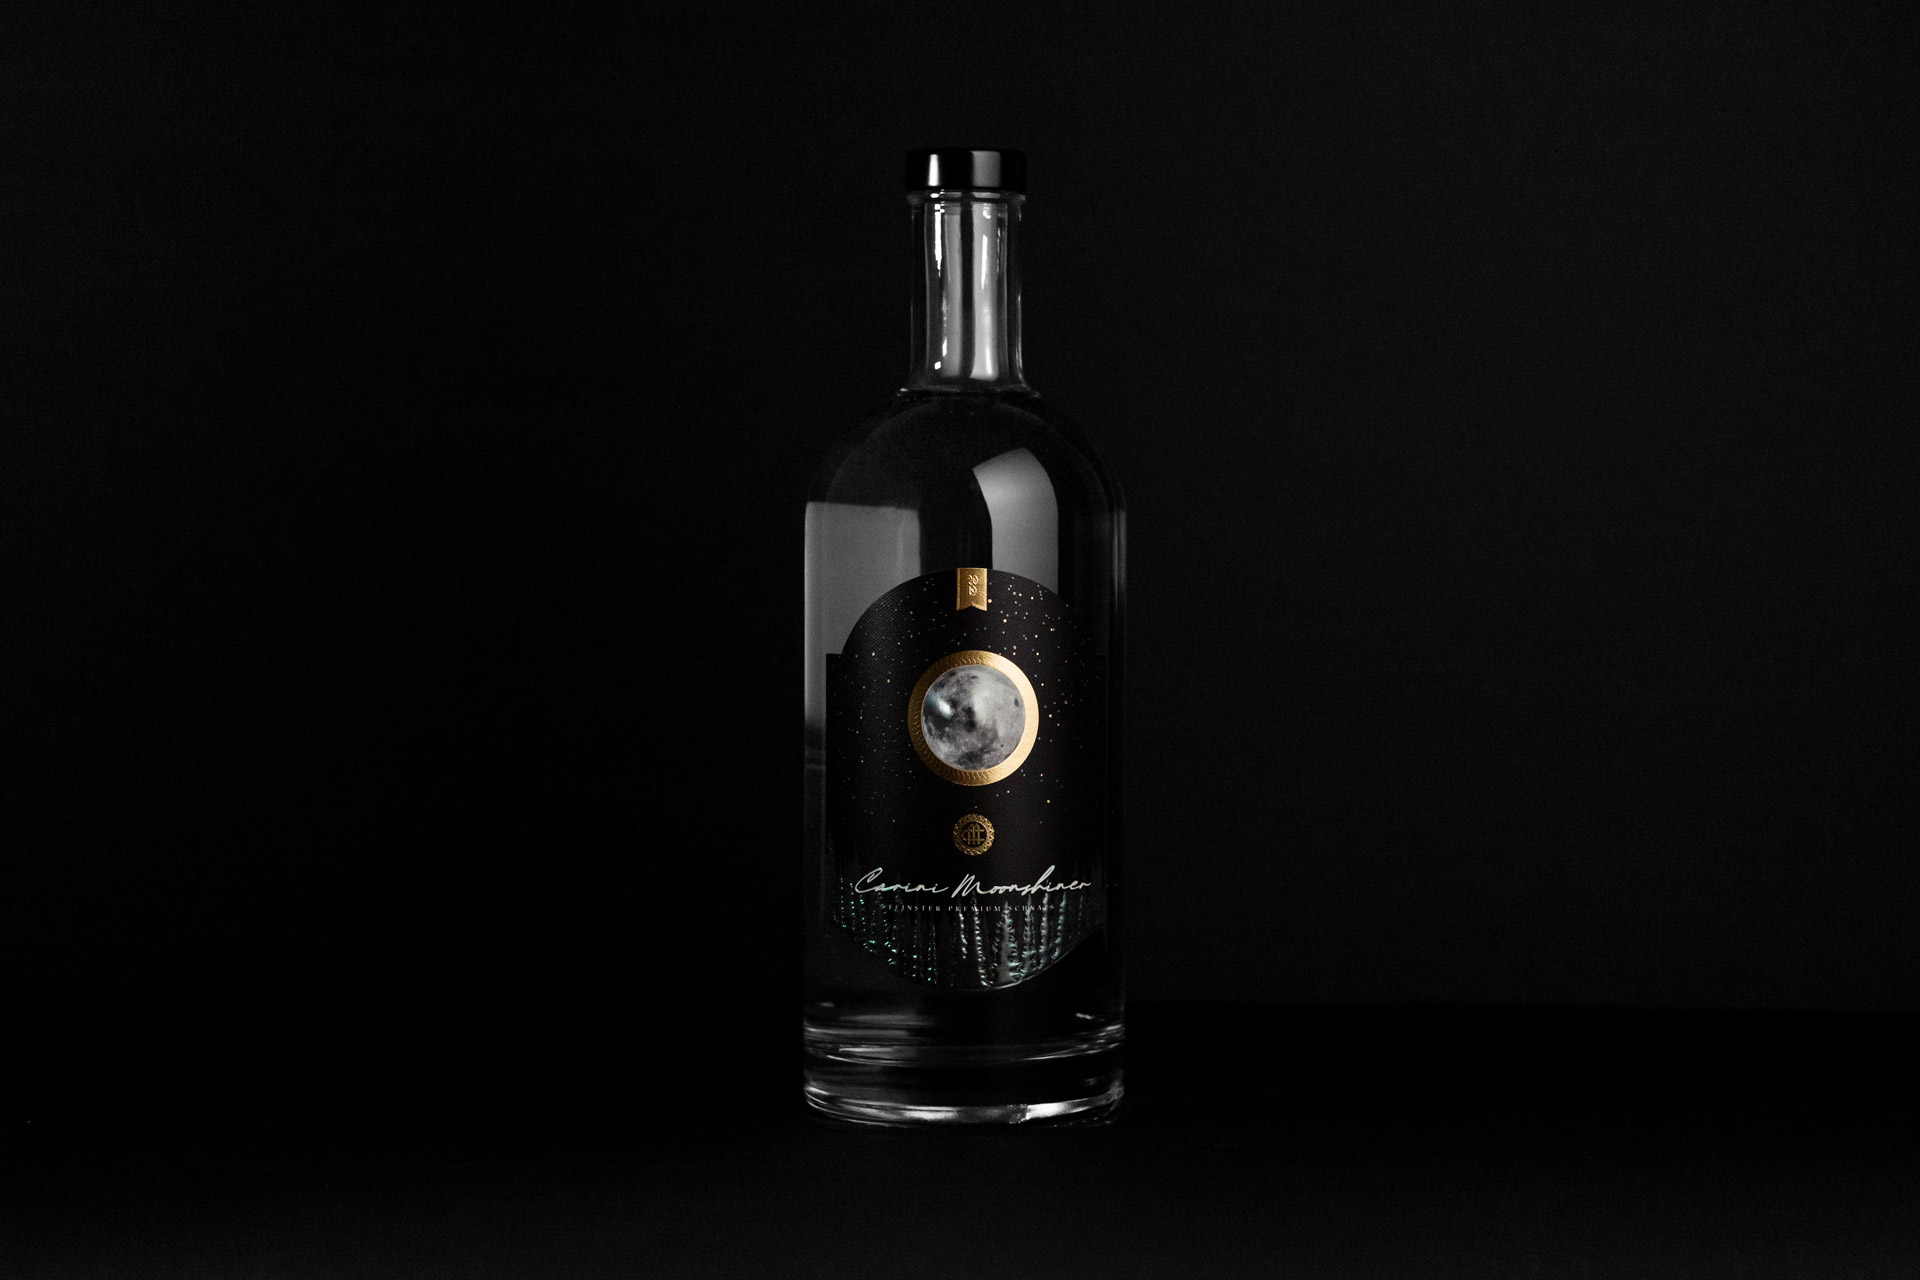 Carini Moonshiner, Etikettendesign auf Flasche, Bernhard Hafele, Vincent Hehle, viergestalten